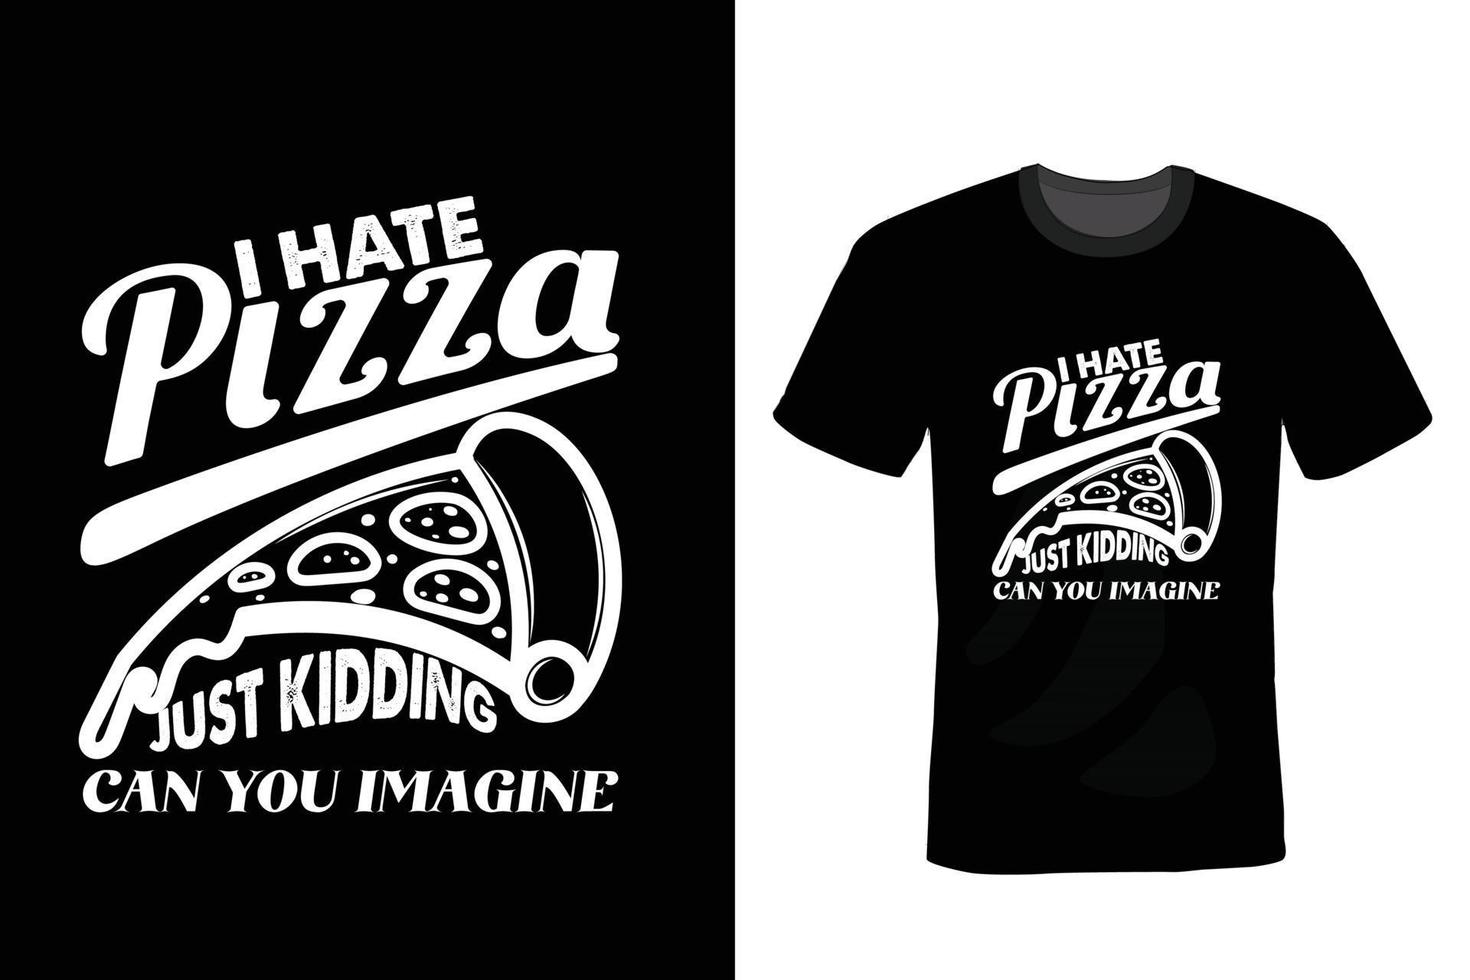 conception de t-shirt pizza, typographie, vintage vecteur